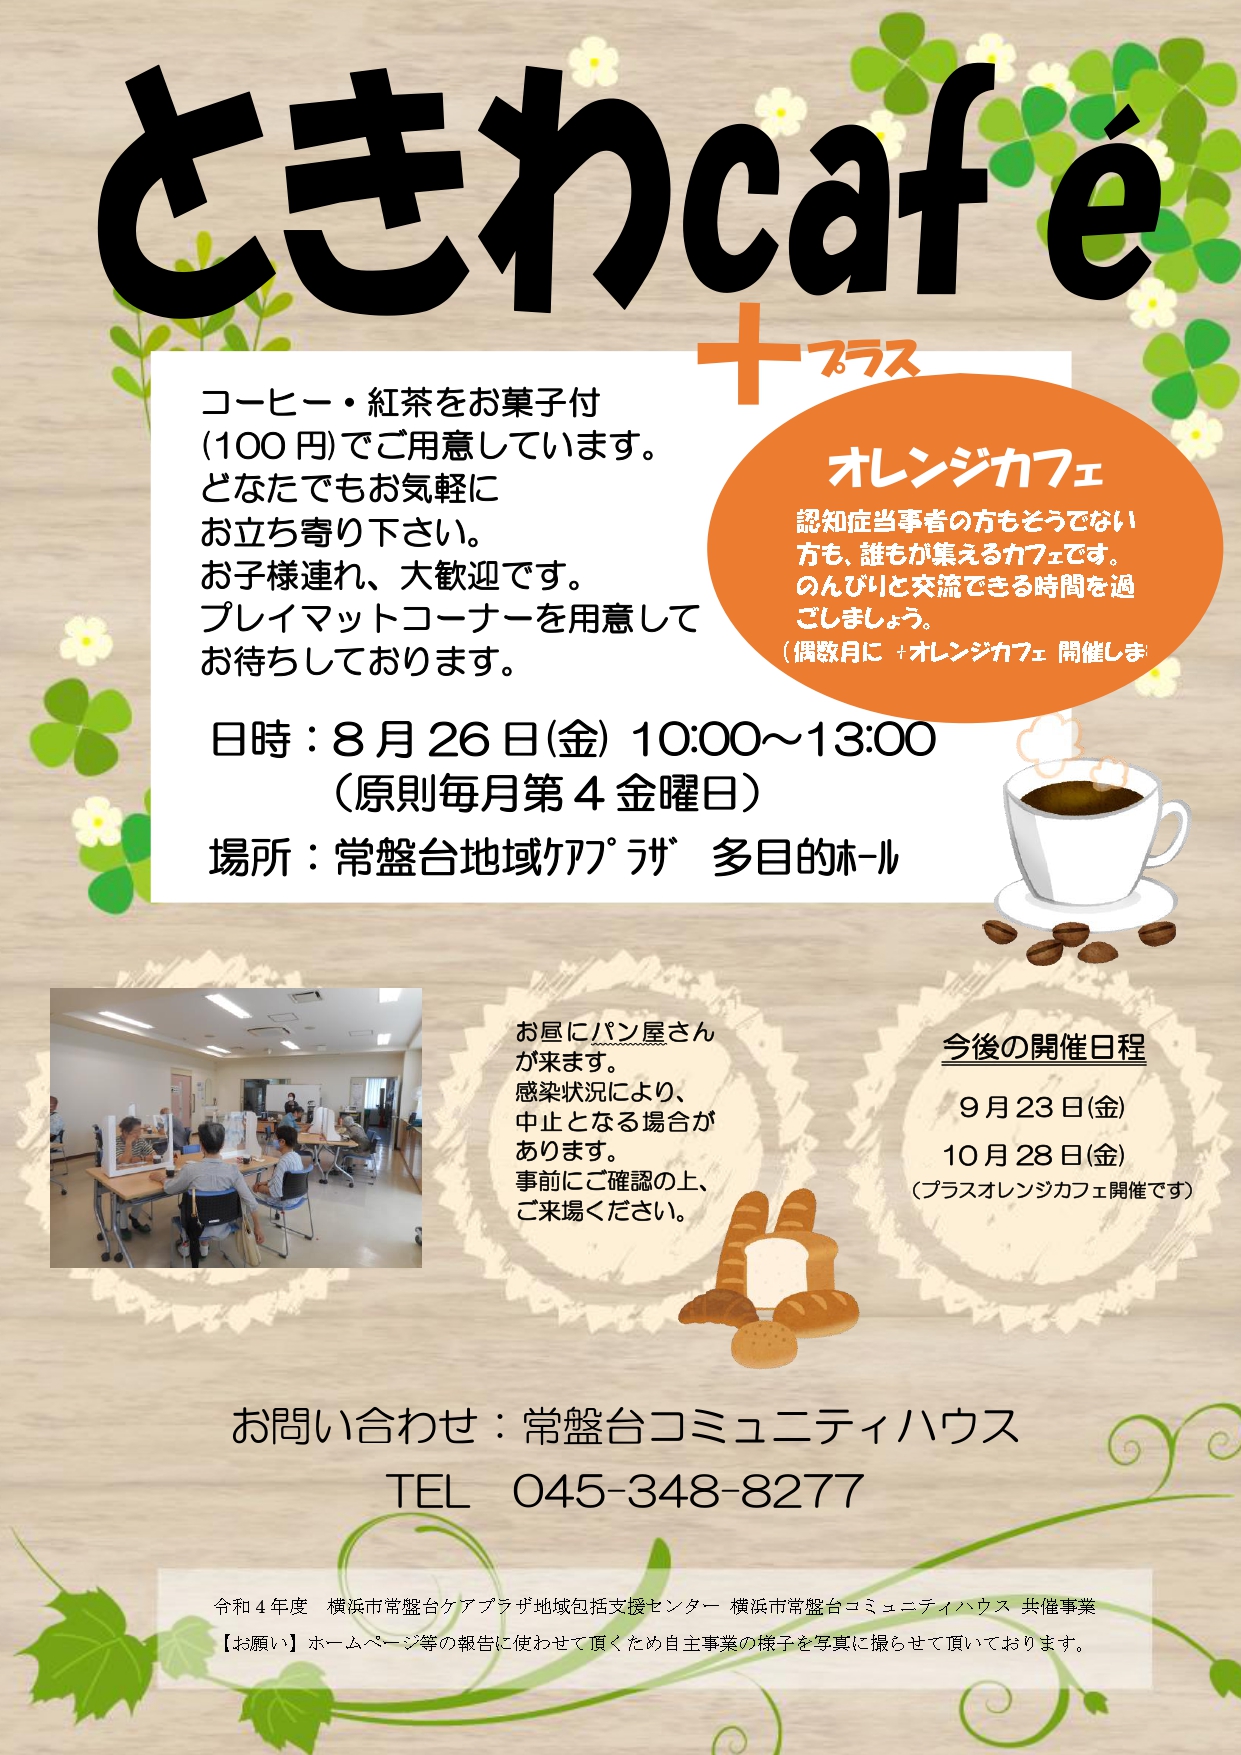 「ときわCafé+オレンジカフェ」開催のお知らせ